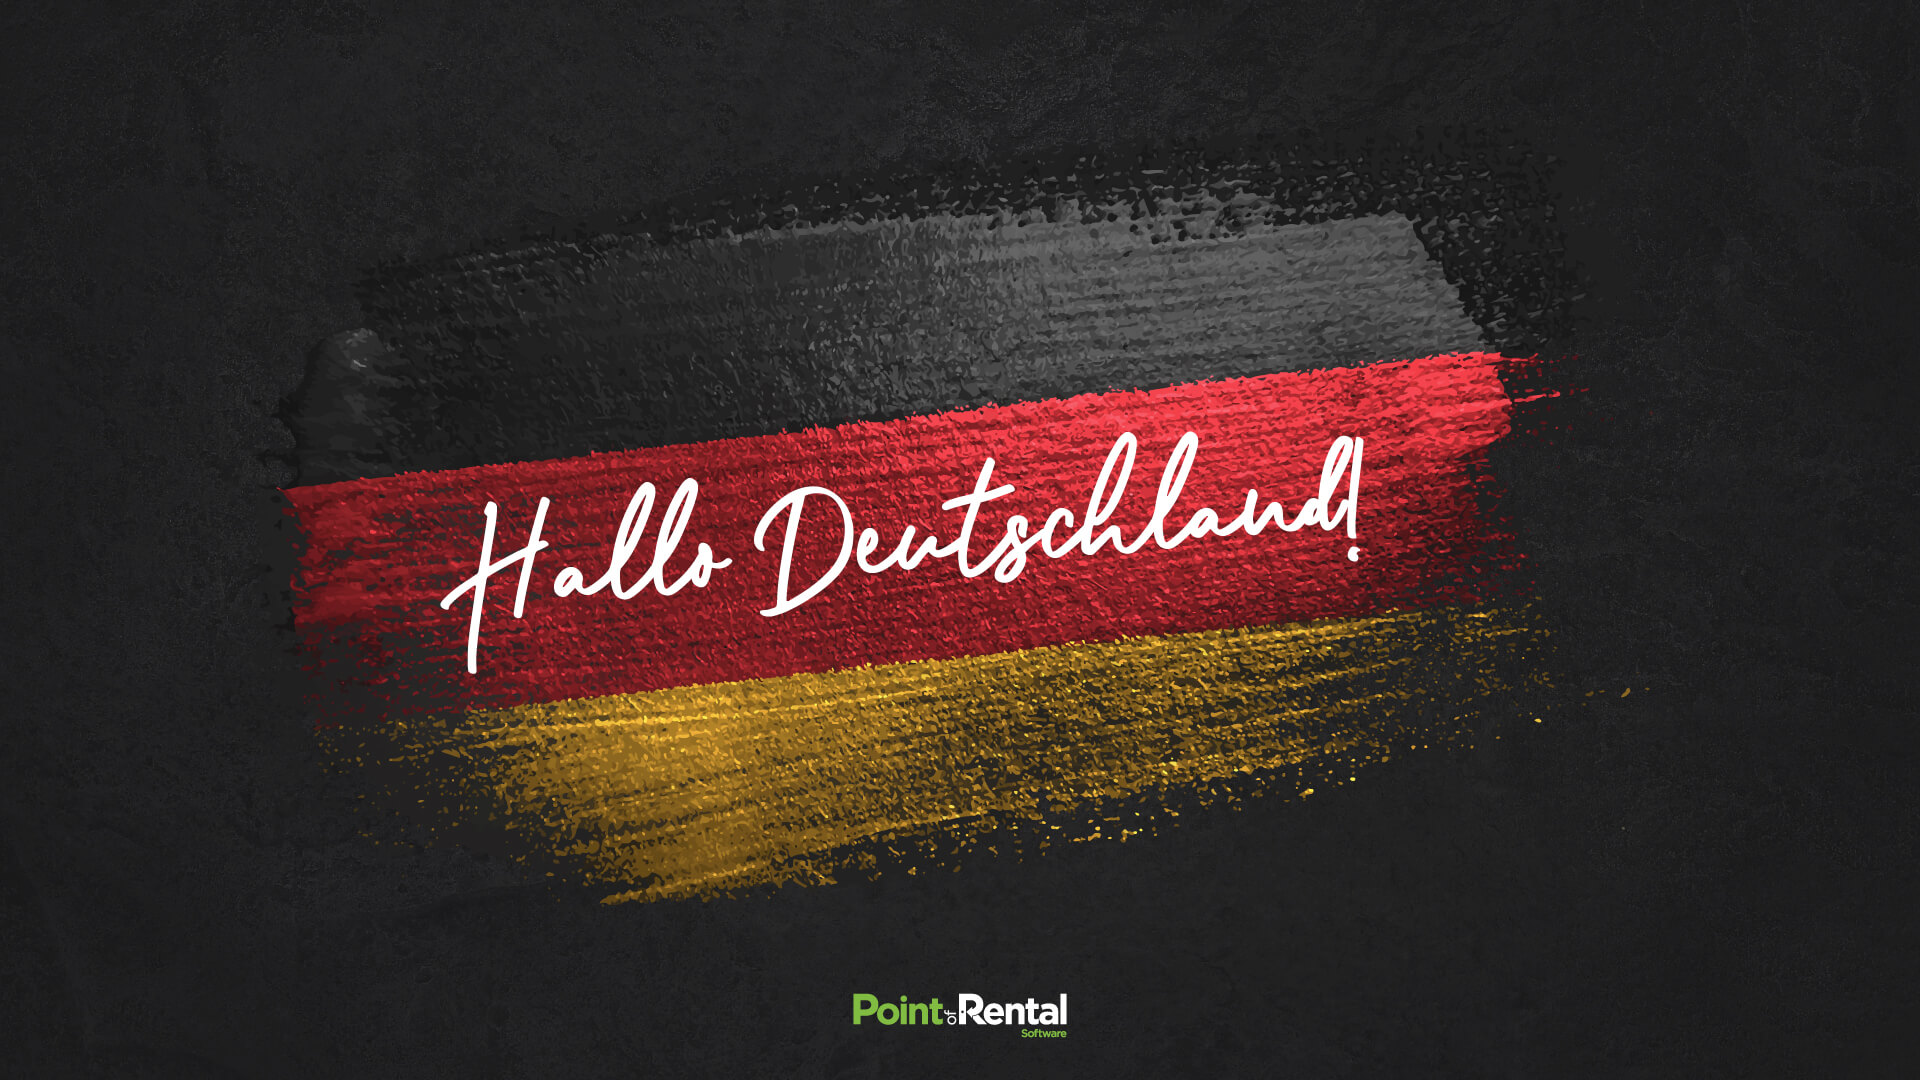 German office press release - Hallo, Deutschland!